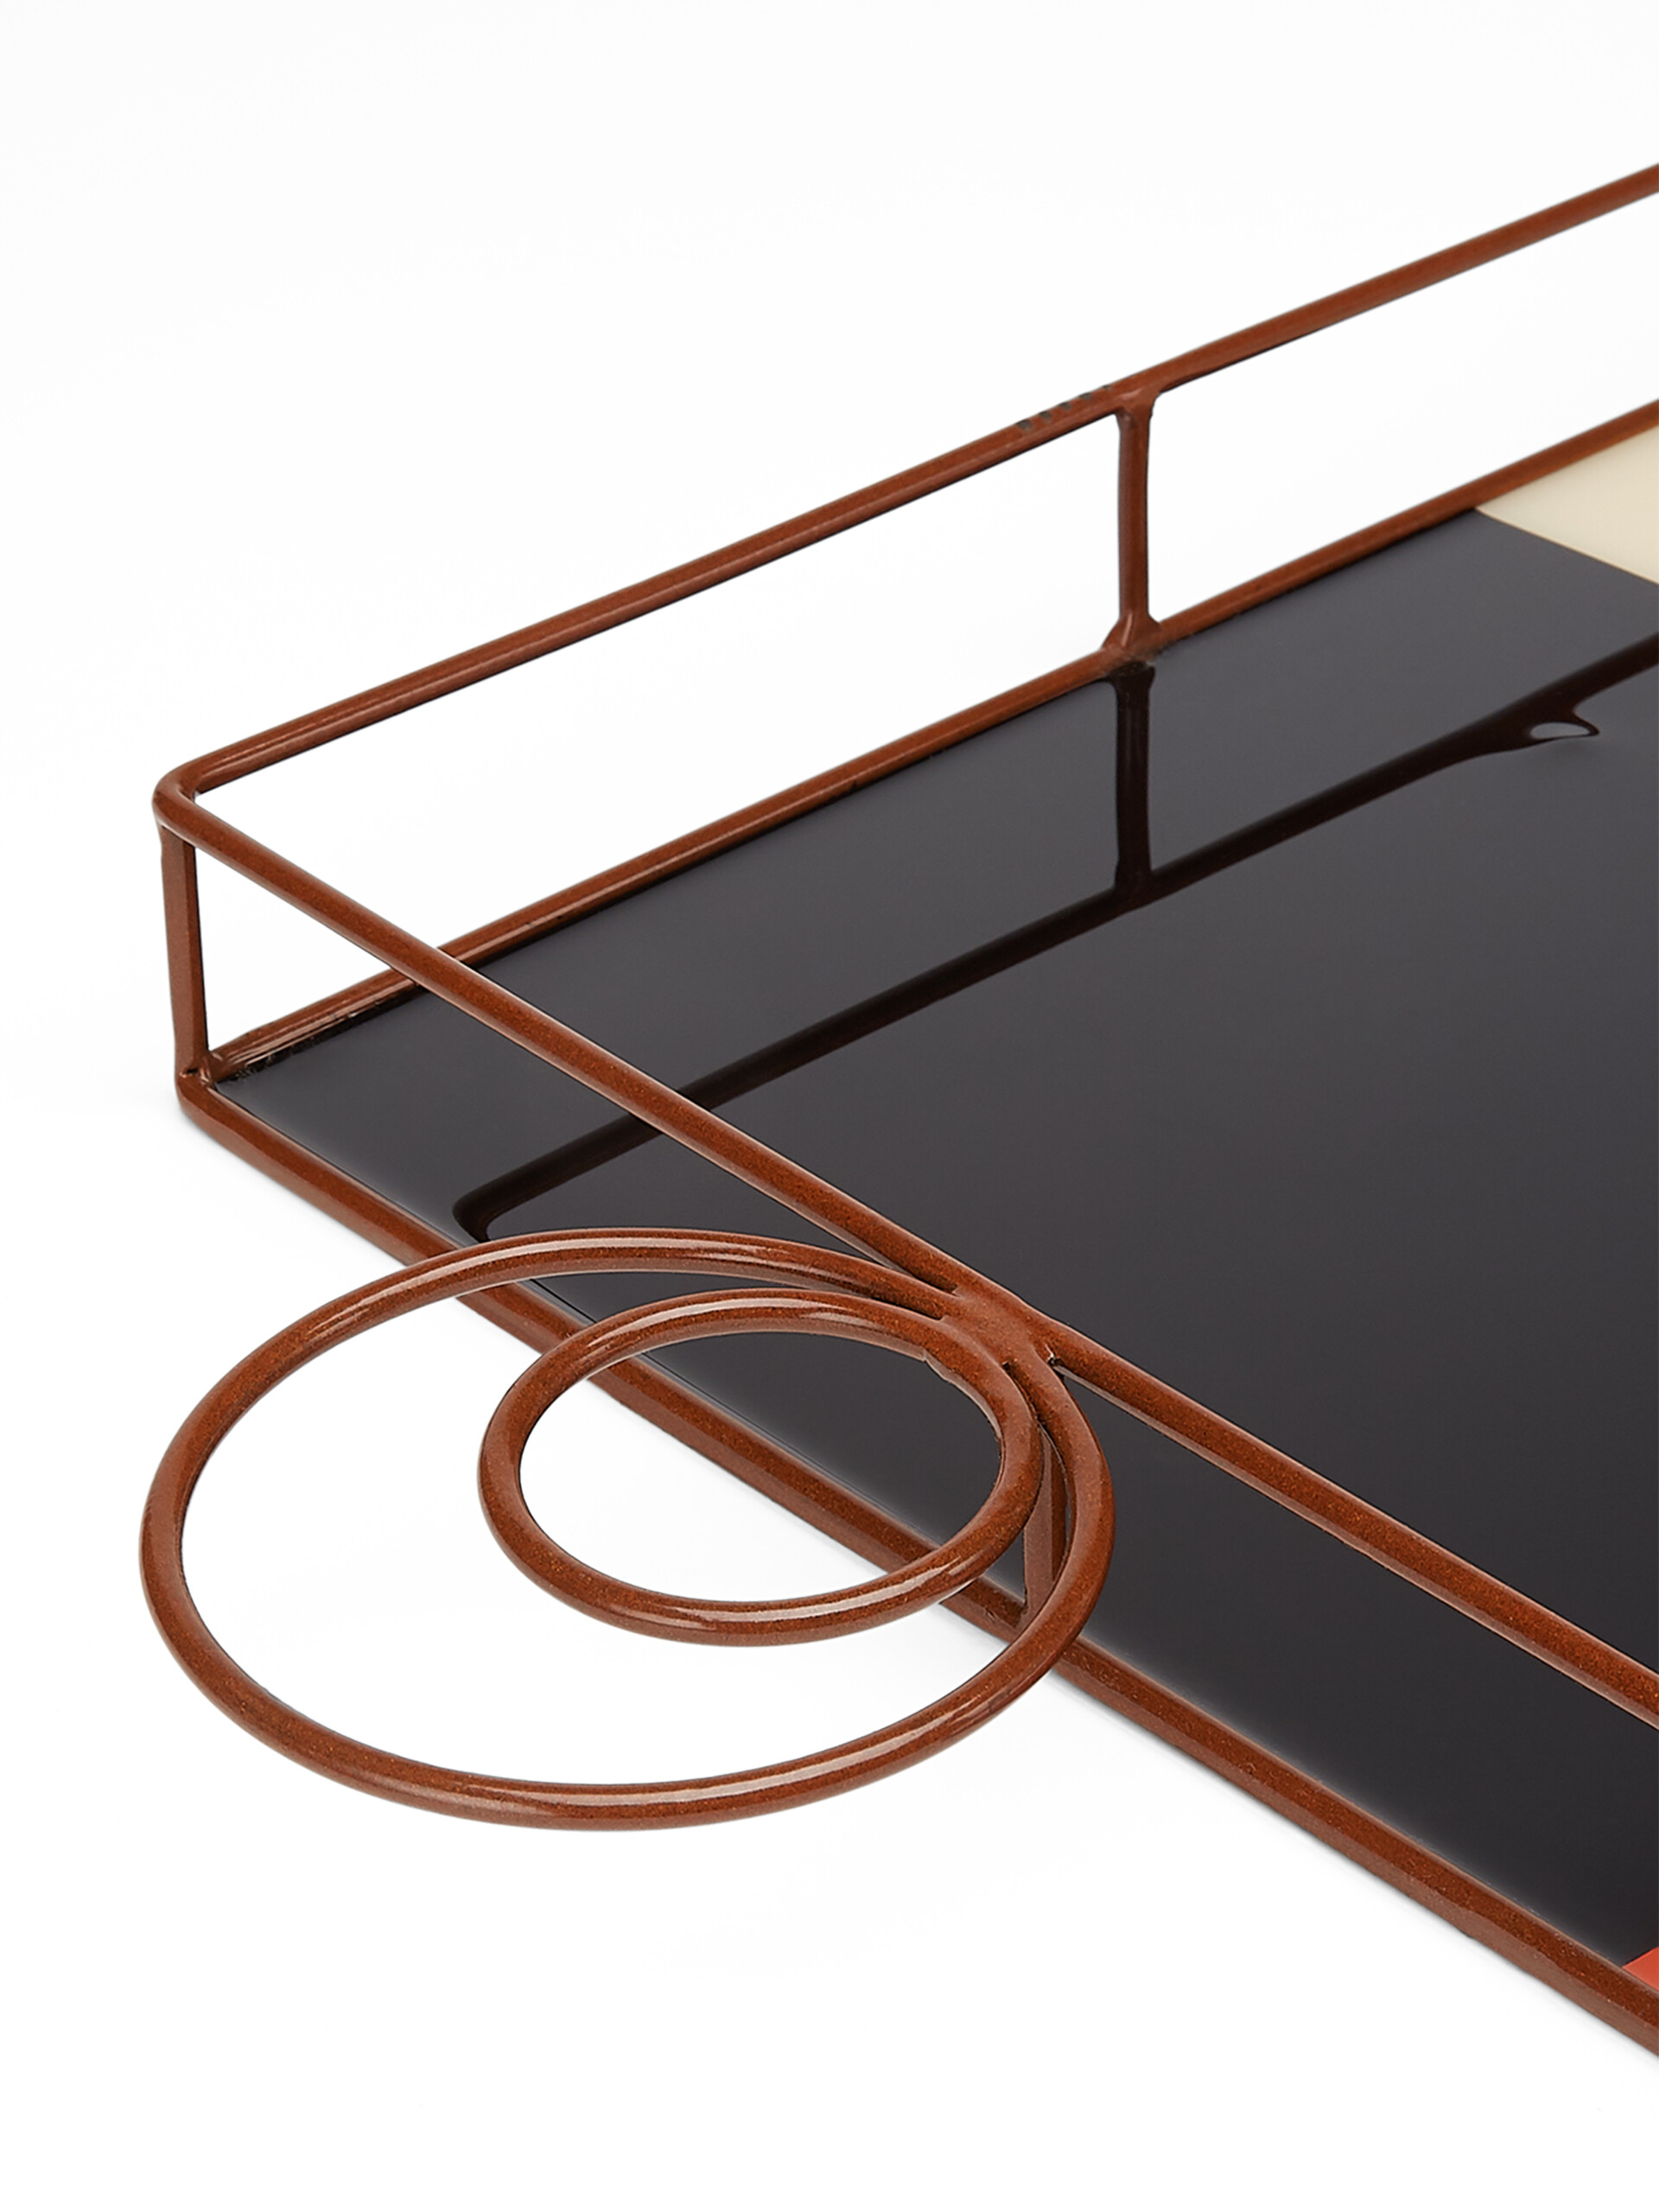 Bandeja rectangular MARNI MARKET de hierro y resina de color beige, azul, marrón y rojo - Accesorios - Image 3